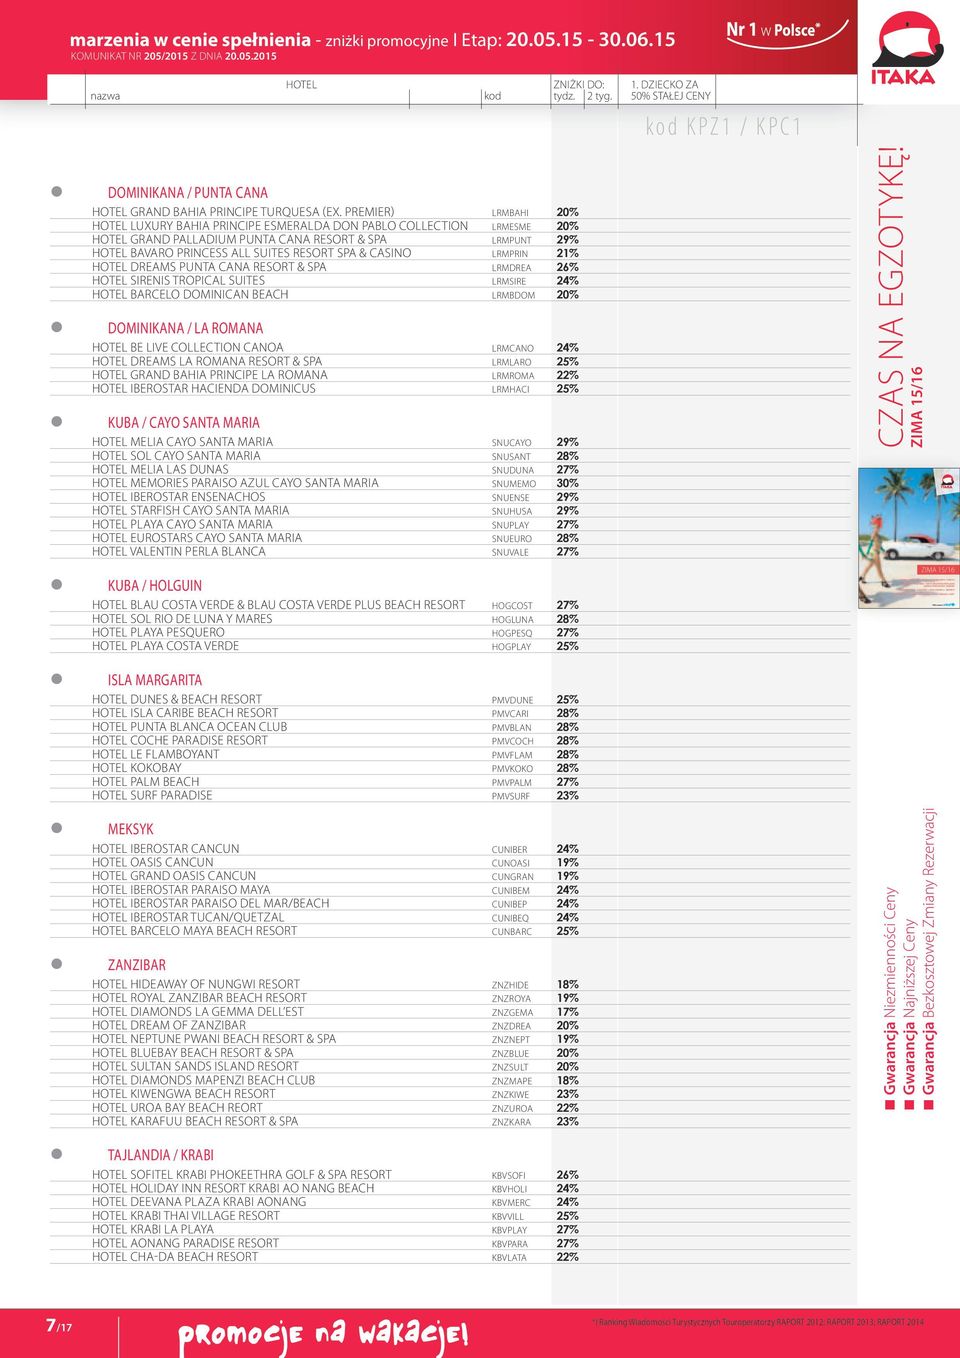 Casino LRMPRIN 21% HOTEL Dreams Punta Cana Resort & Spa LRMDREA 26% HOTEL Sirenis Tropical Suites LRMSIRE 24% HOTEL Barcelo Dominican Beach LRMBDOM 20% Dominikana / La Romana HOTEL Be Live Collection